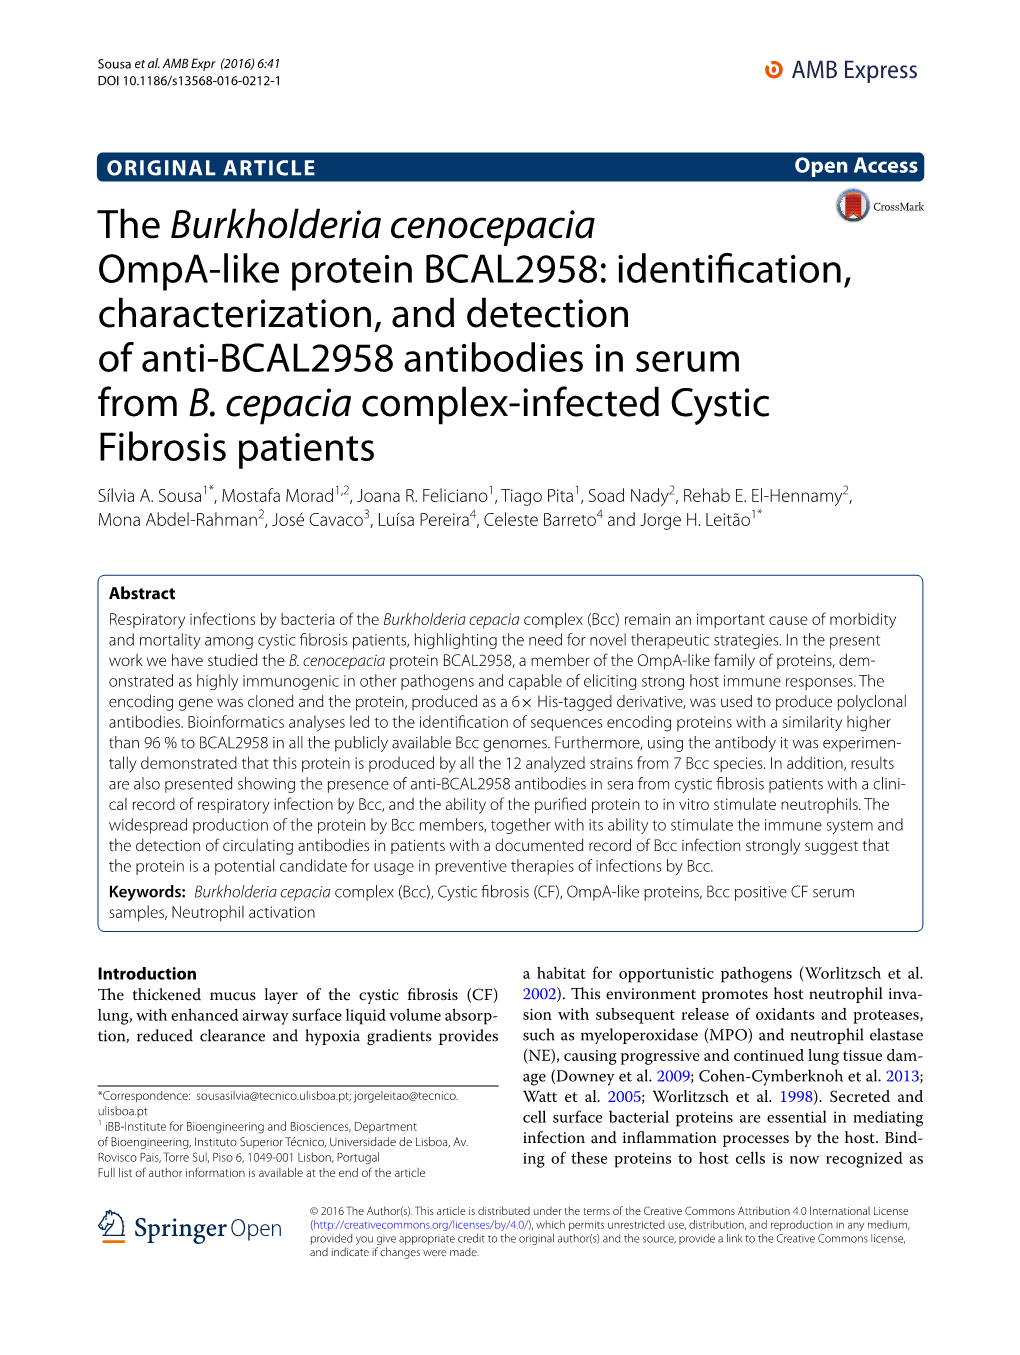 The Burkholderia Cenocepacia Ompa-Like Protein